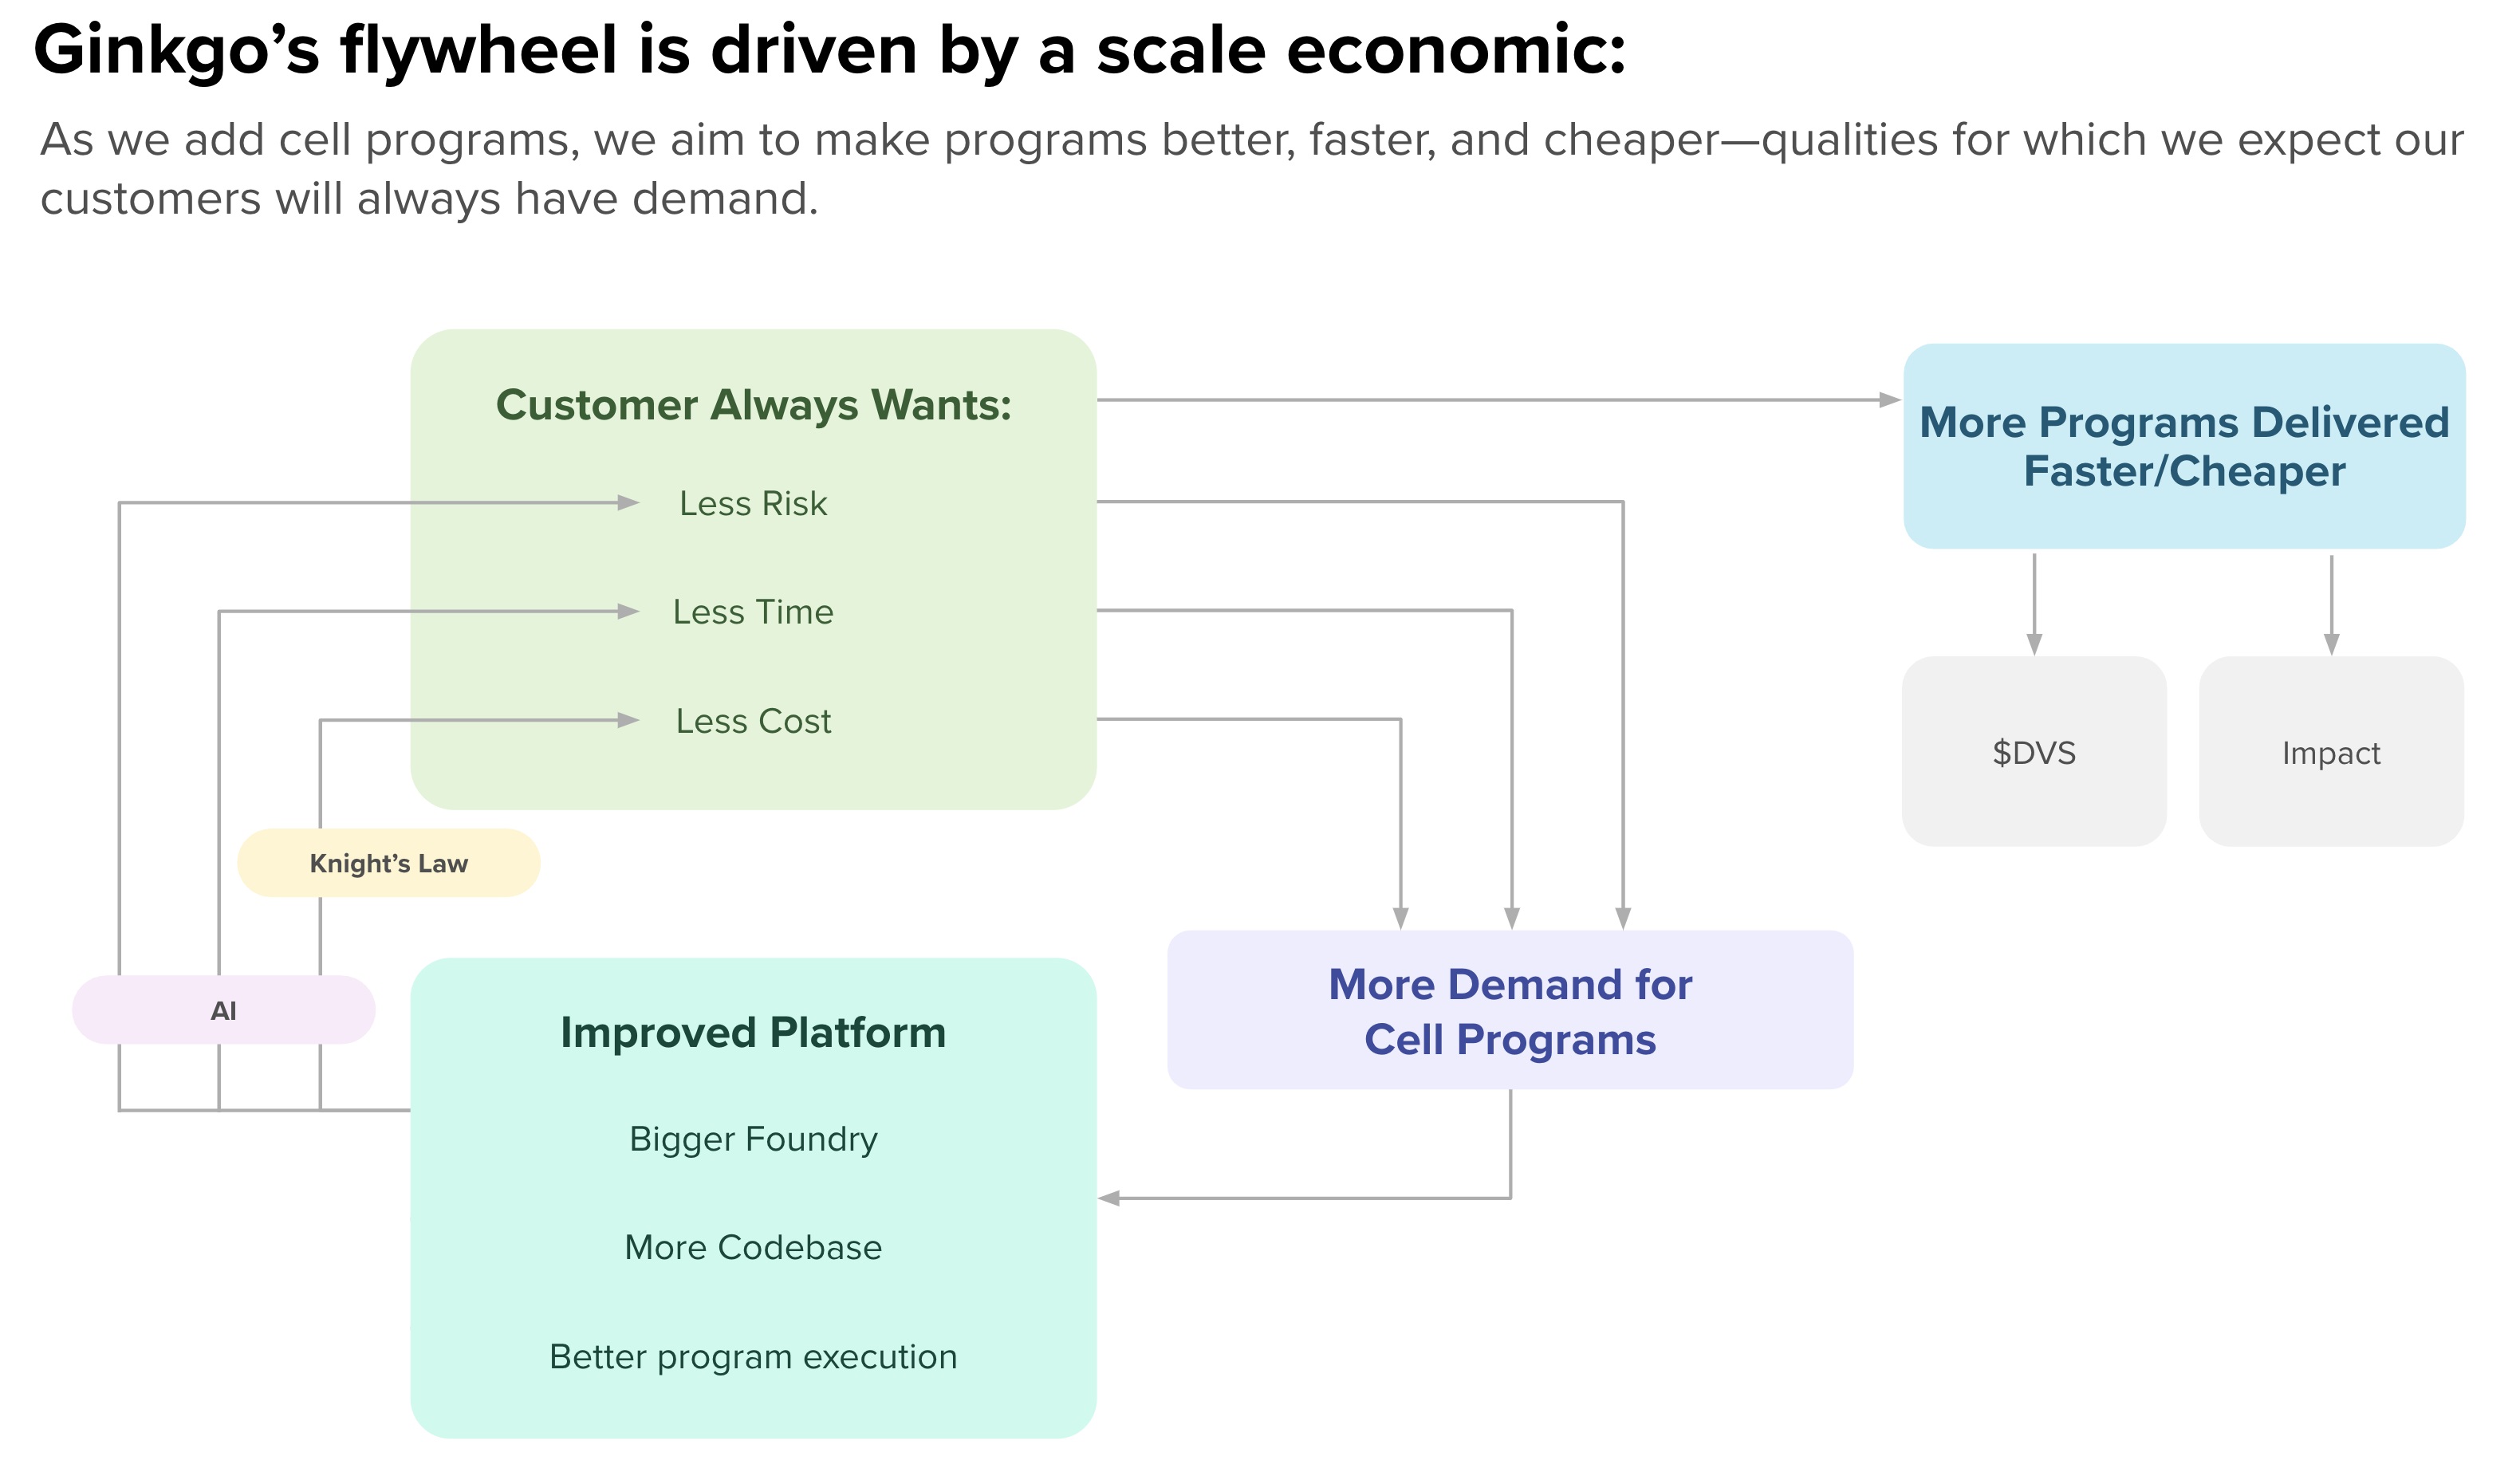 Ginkgo's Flywheel Driven by a Scale Economic (2).jpg